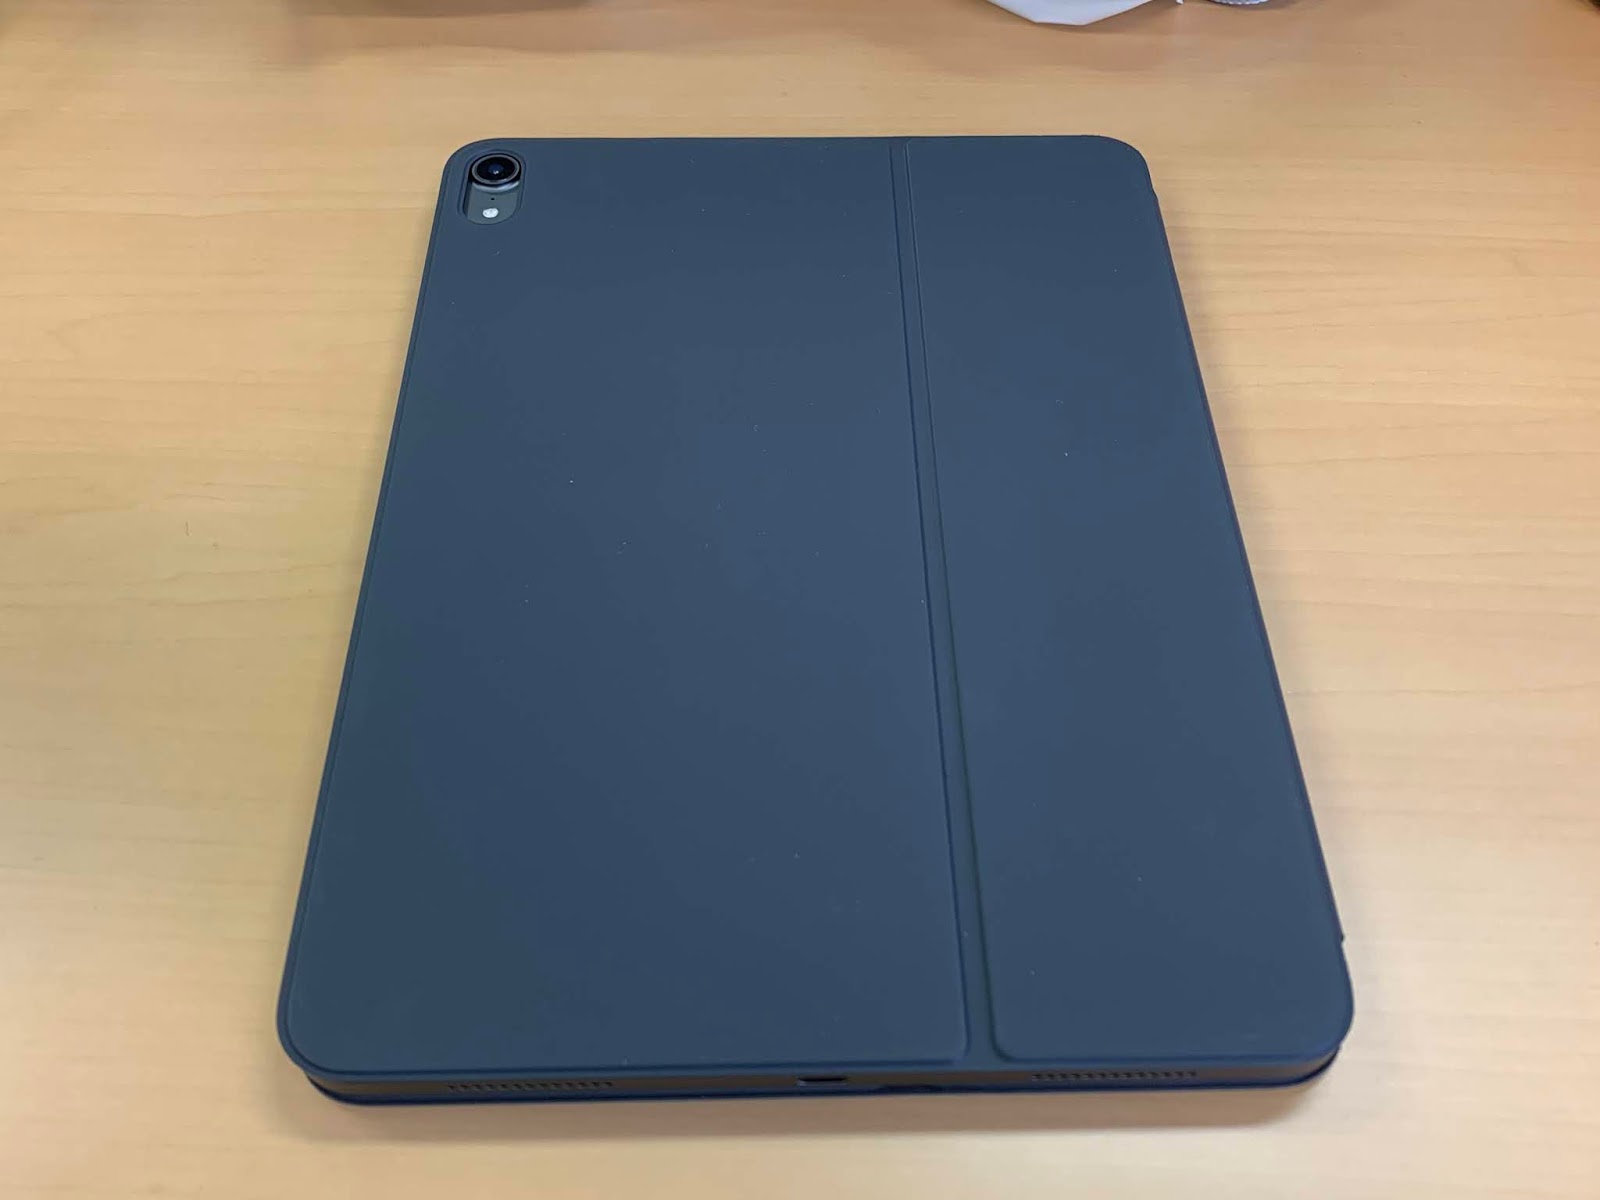 iPad Pro 11インチ用Smart Keyboard Folio開封の儀と感想 | Milanista の解説書